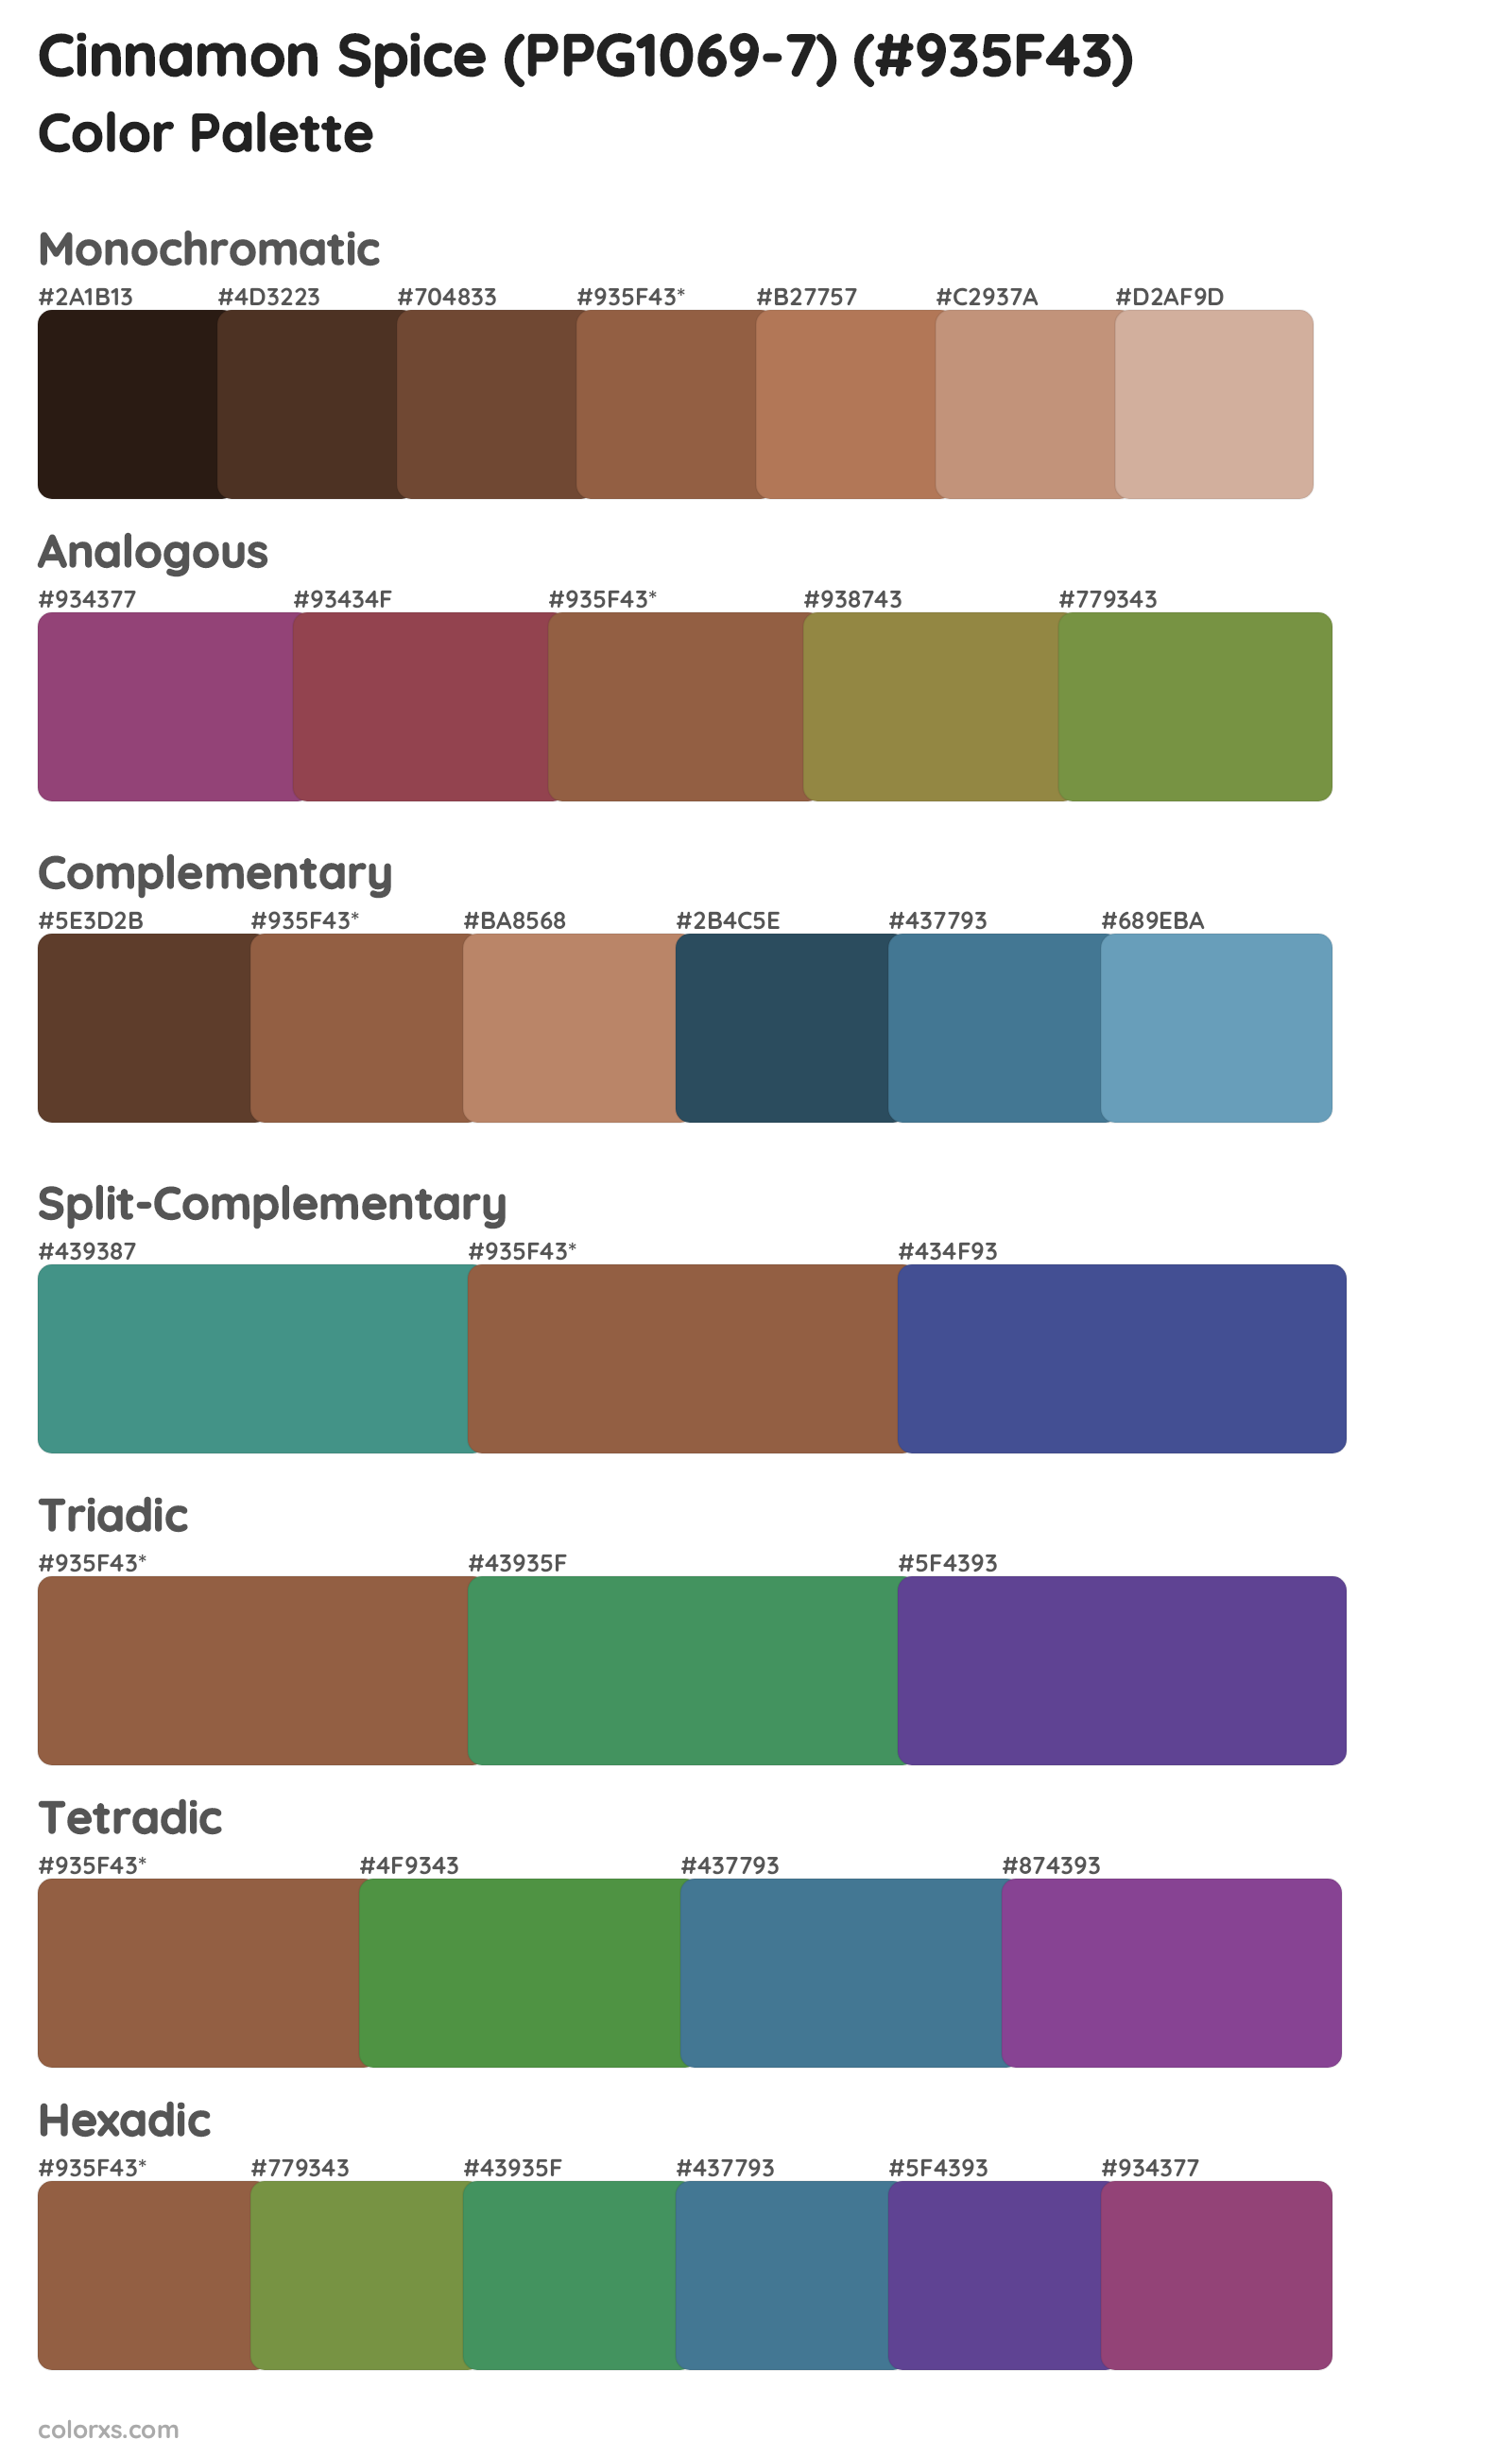 Cinnamon Spice (PPG1069-7) Color Scheme Palettes